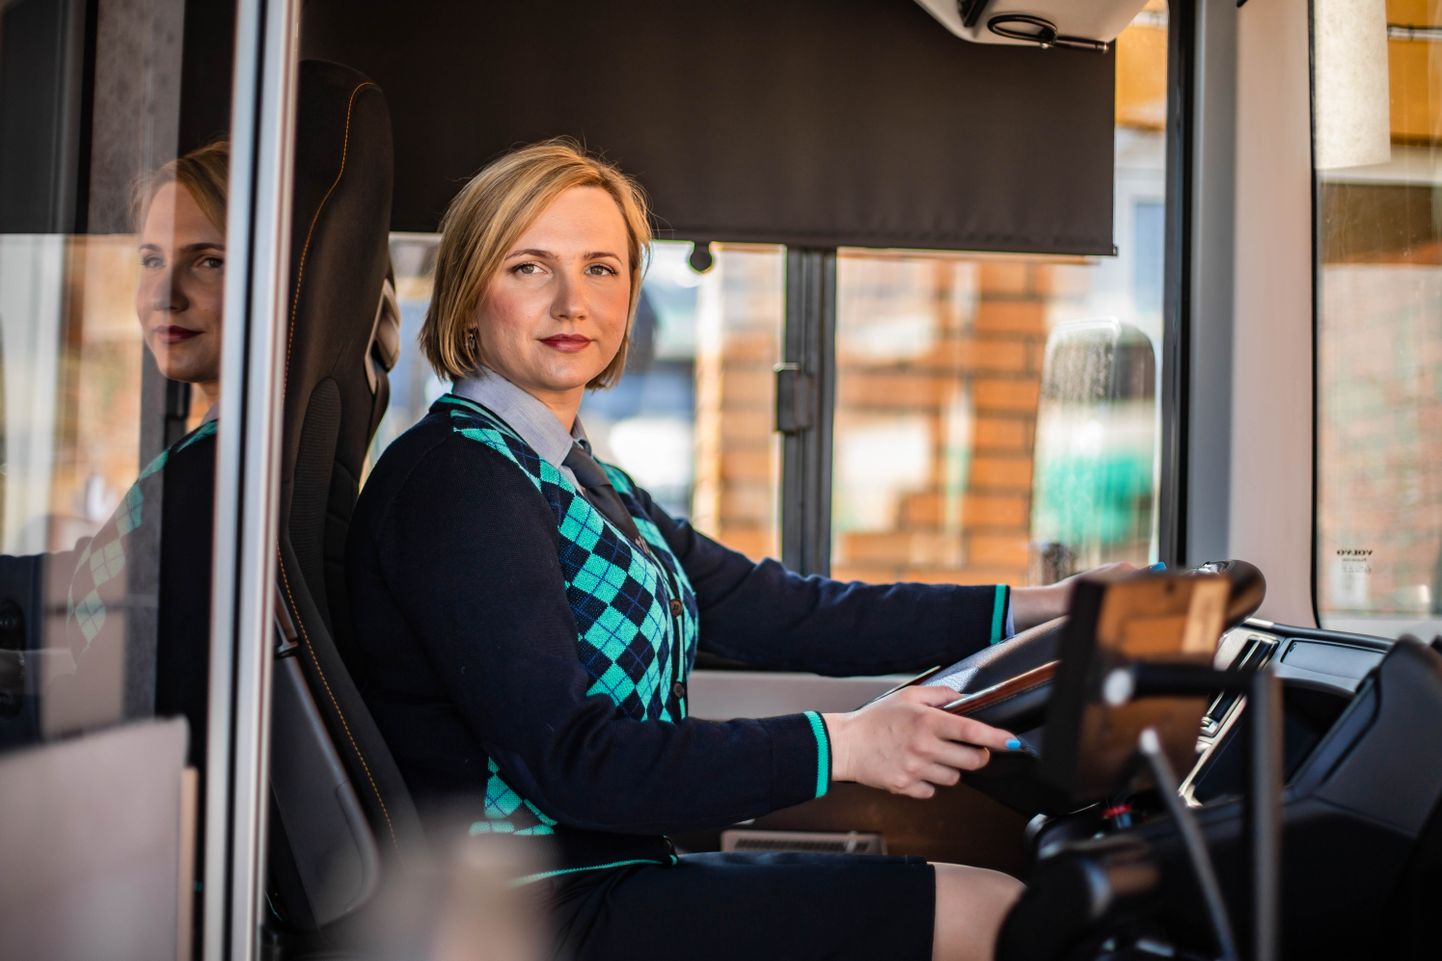 Naised õpivad meelsasti bussijuhiks.